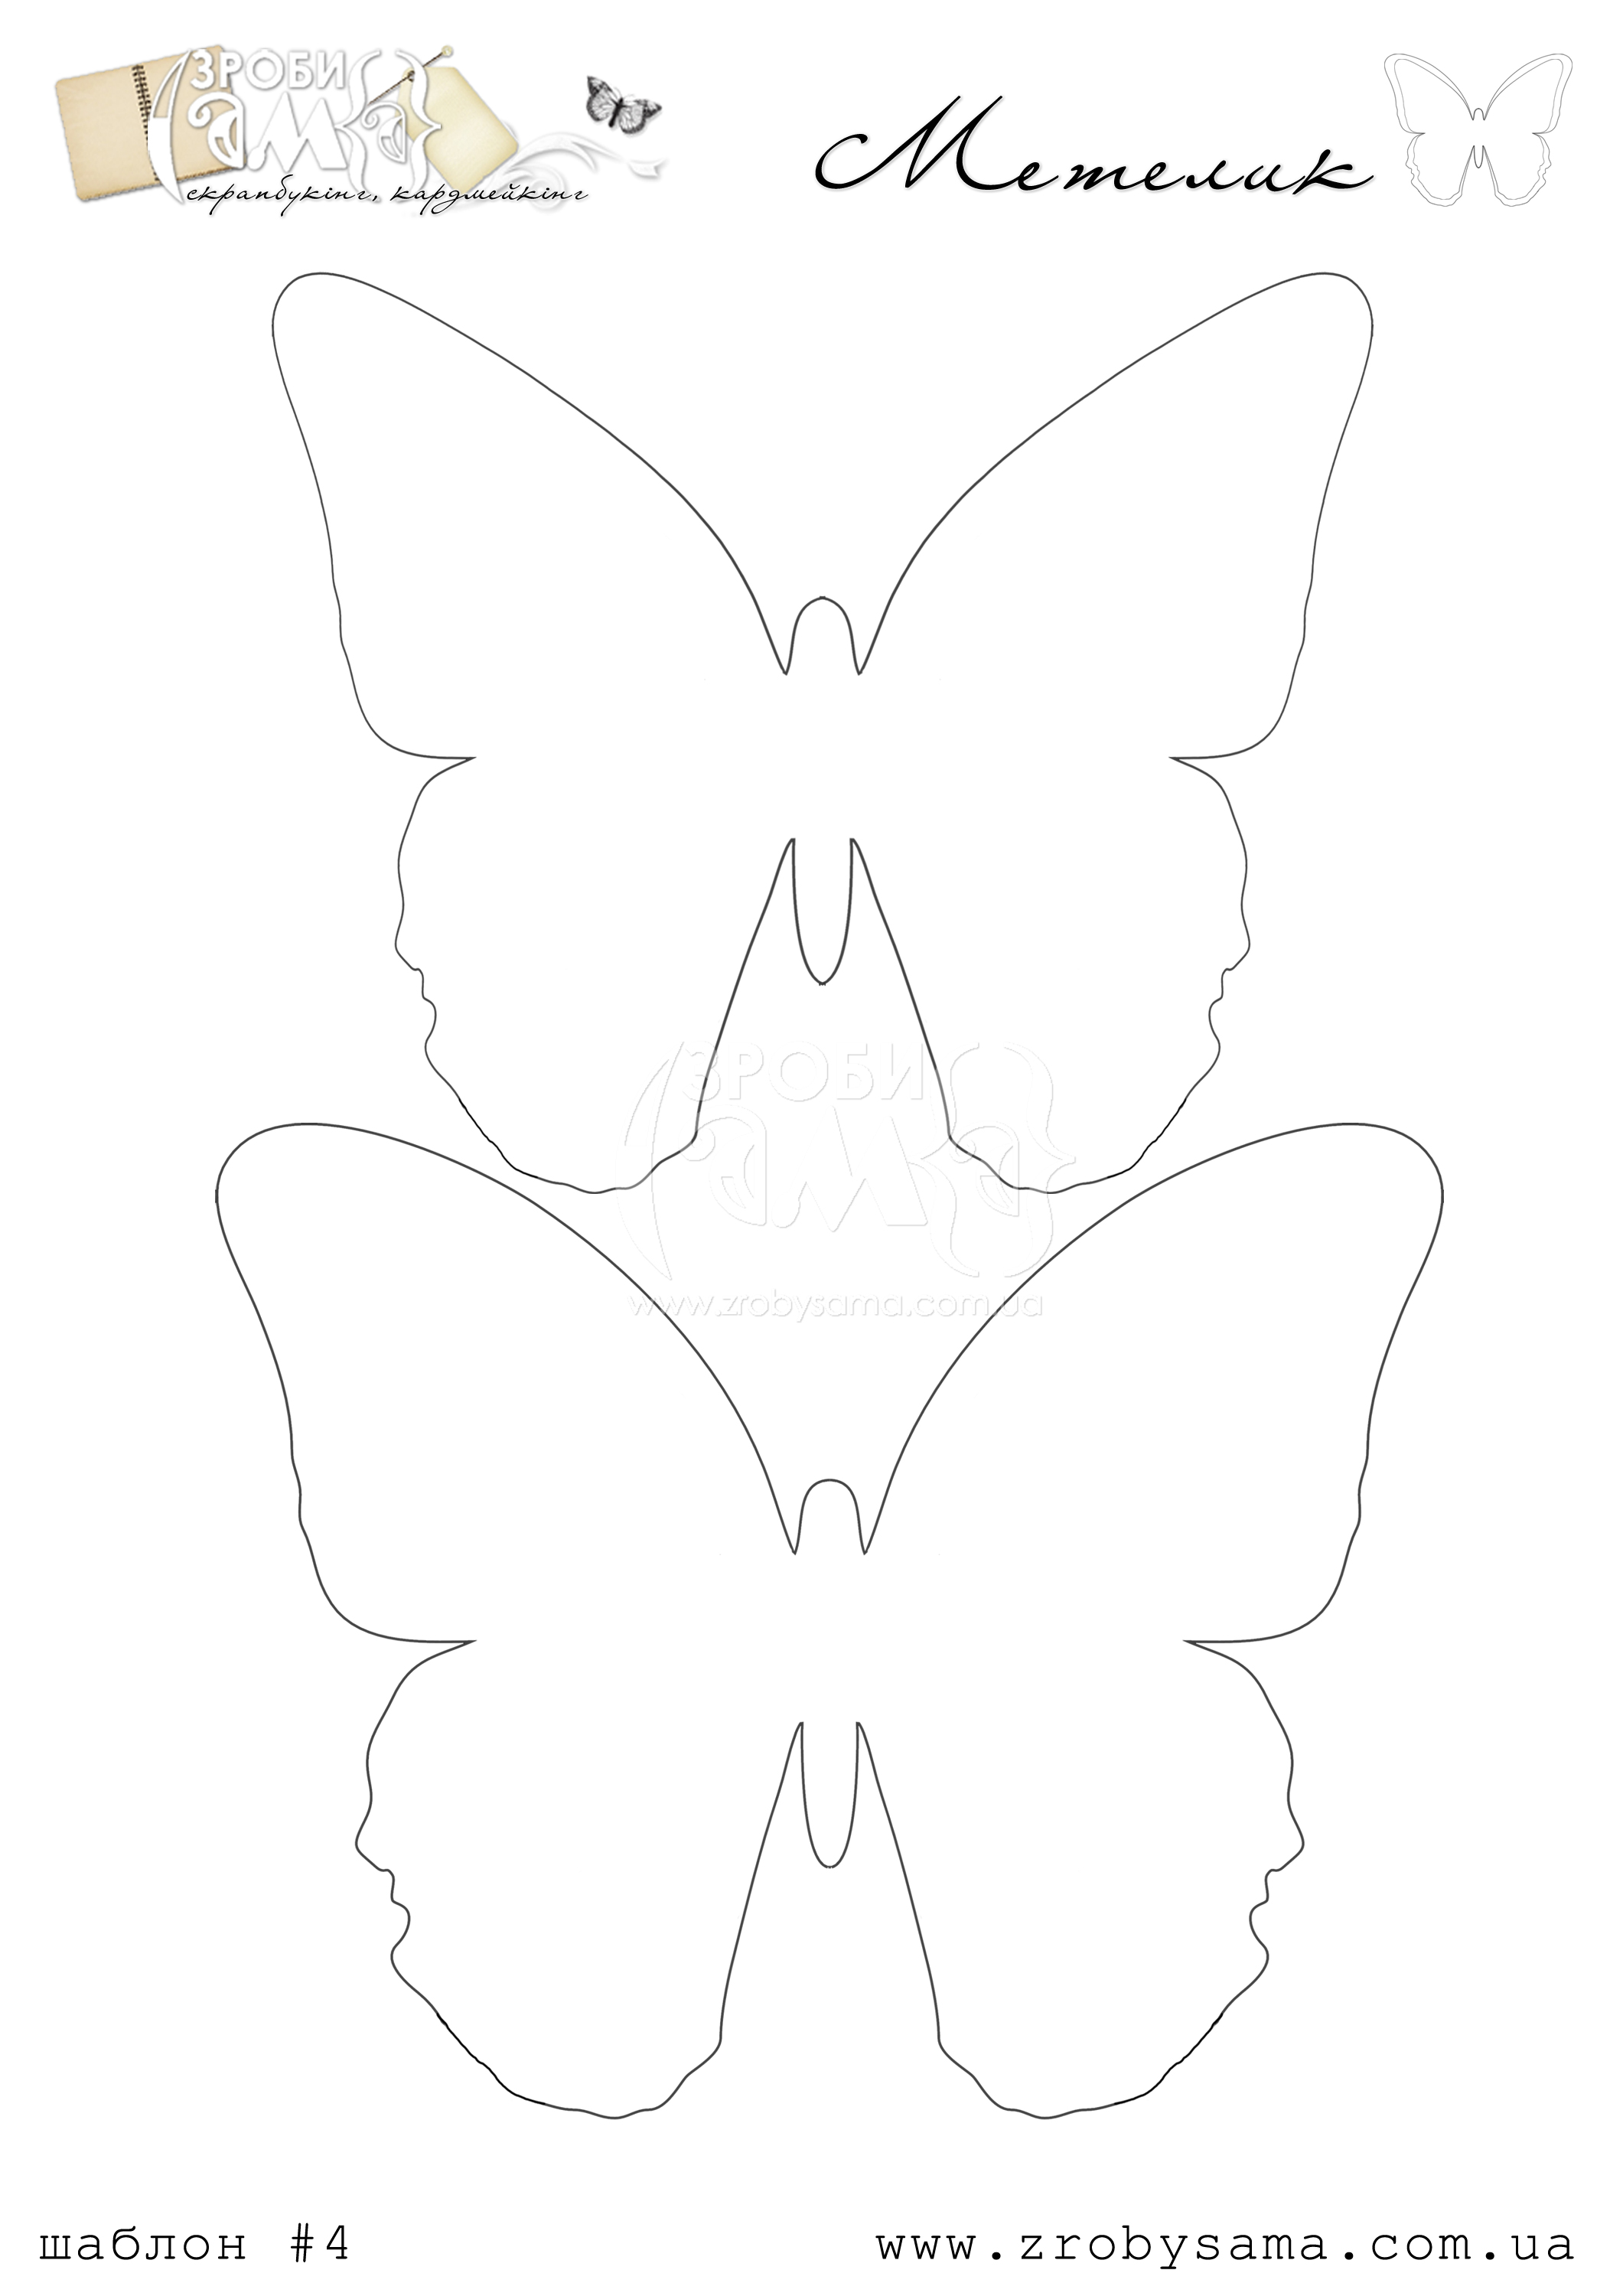 Шаблон бабочки из фоамирана. Шаблон бабочки. Трафарет бабочки из фетра. Трафарет бабочки из фоамирана. Бабочка из фетра шаблоны.